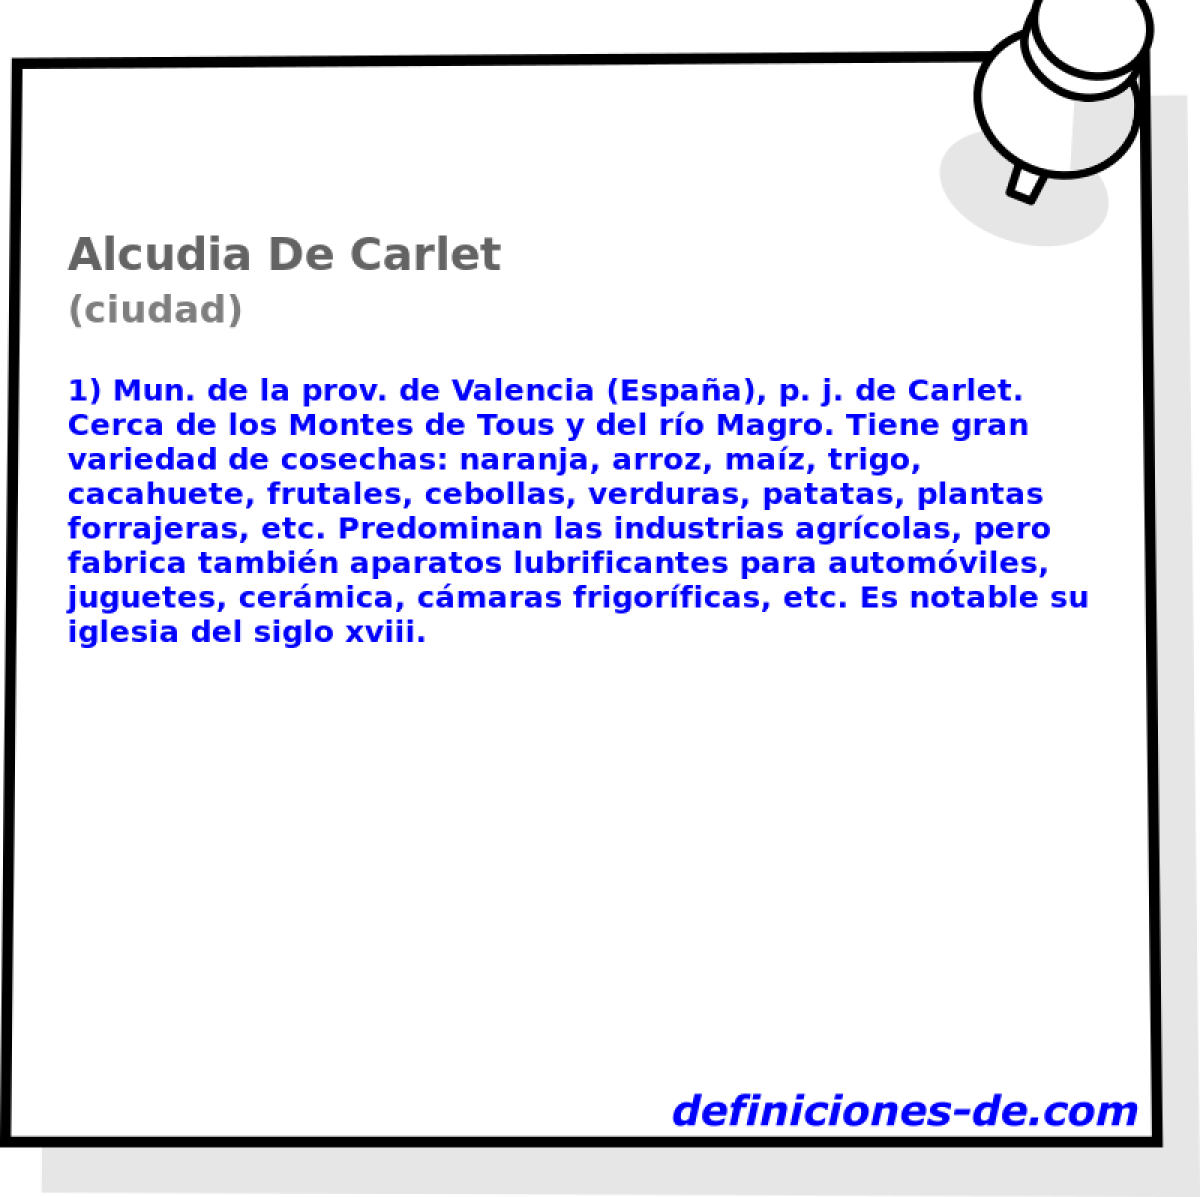 Alcudia De Carlet (ciudad)